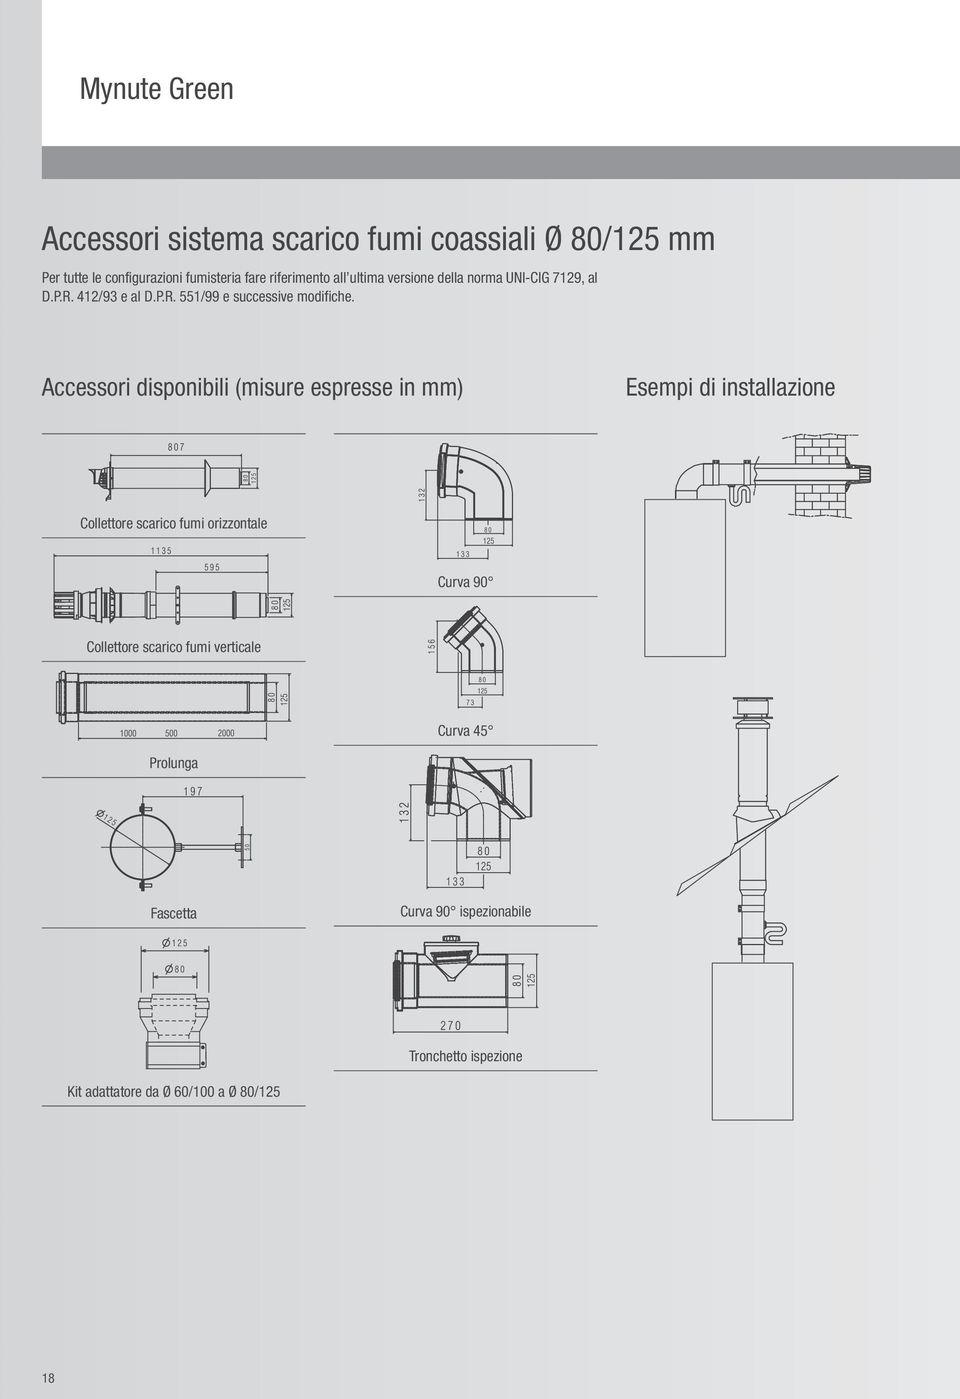 Accessori disponibili (misure espresse in mm) Esempi di installazione Collettore scarico fumi orizzontale Curva 90